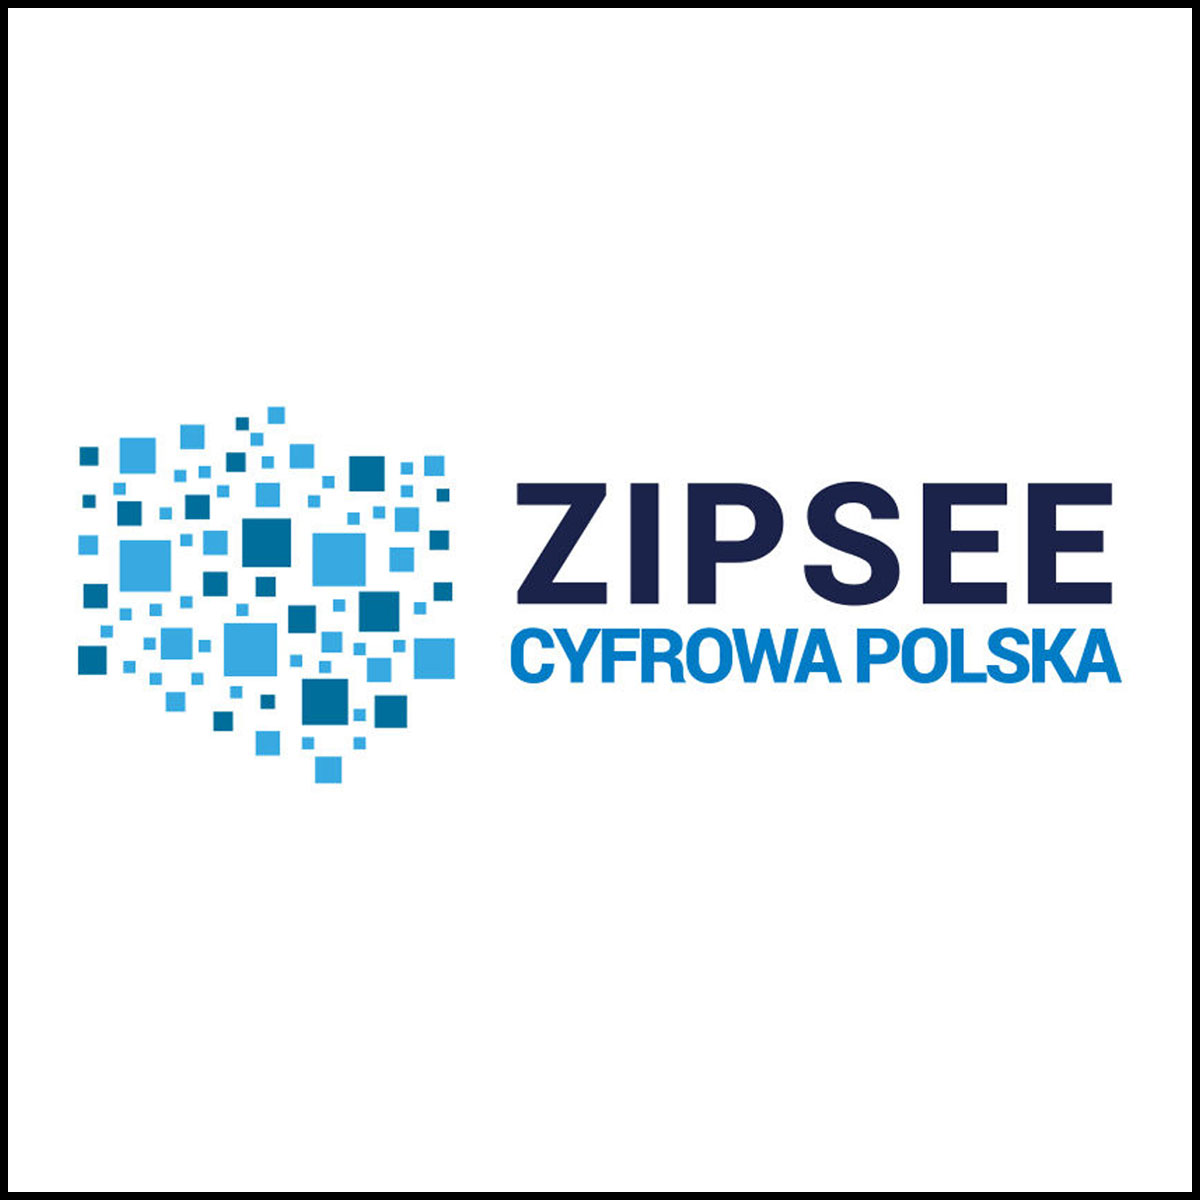 ZIPSEE Cyfrowa Polska